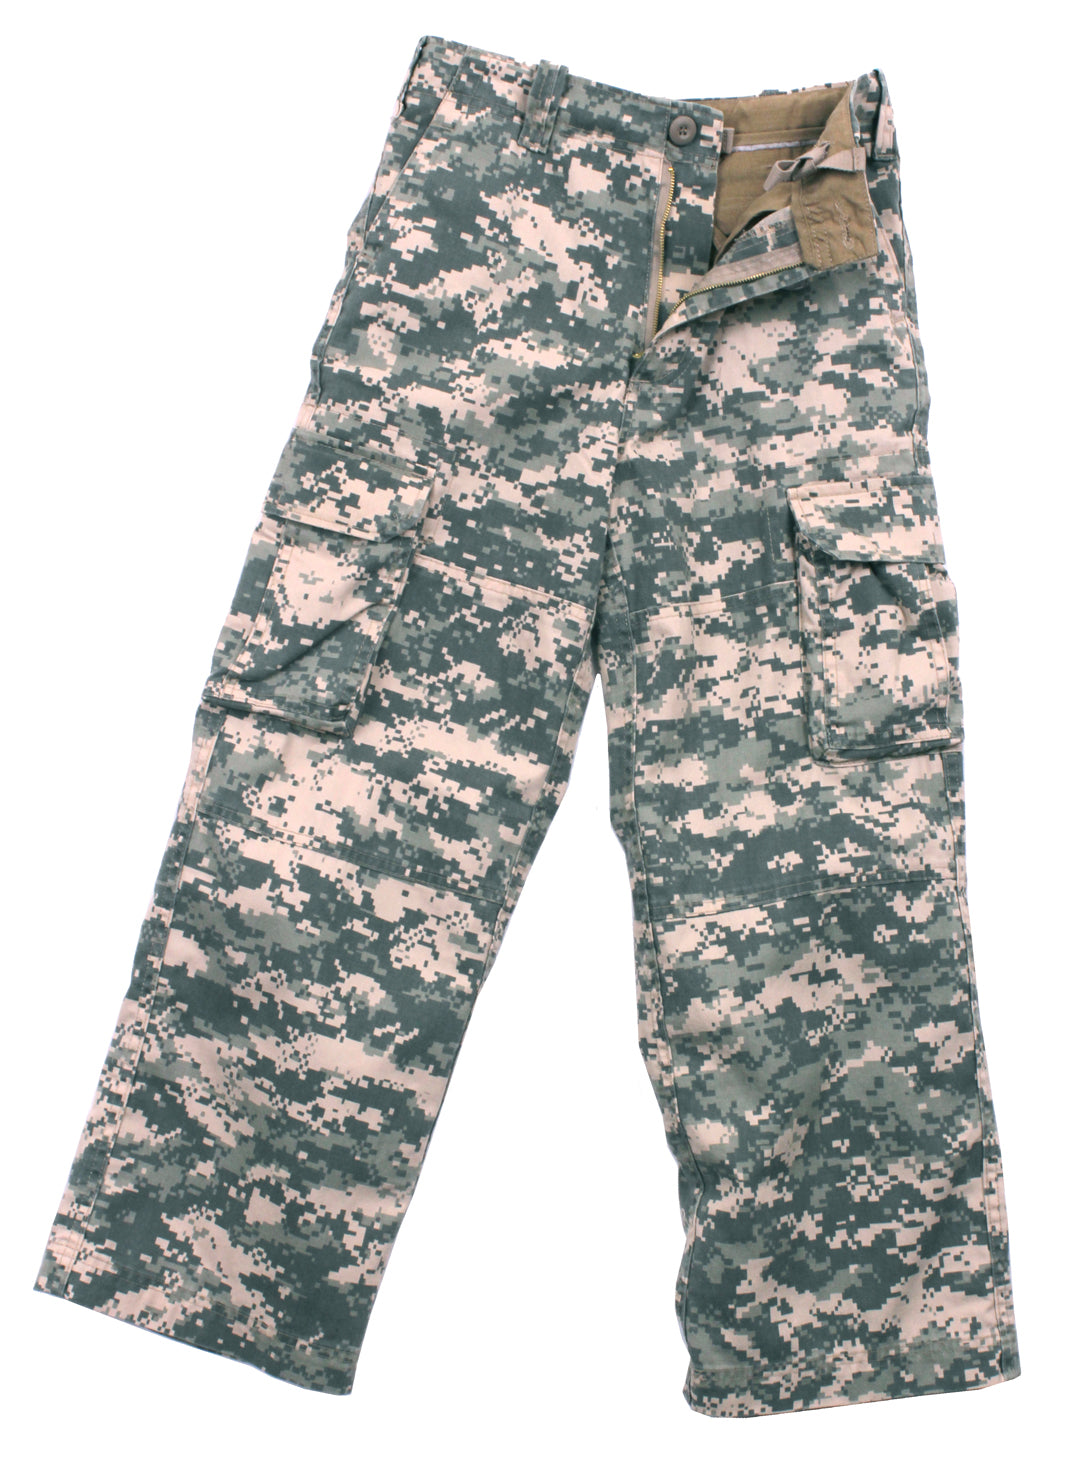 Kids Vintage Paratrooper Fatigue Pants - Tactical Choice Plus